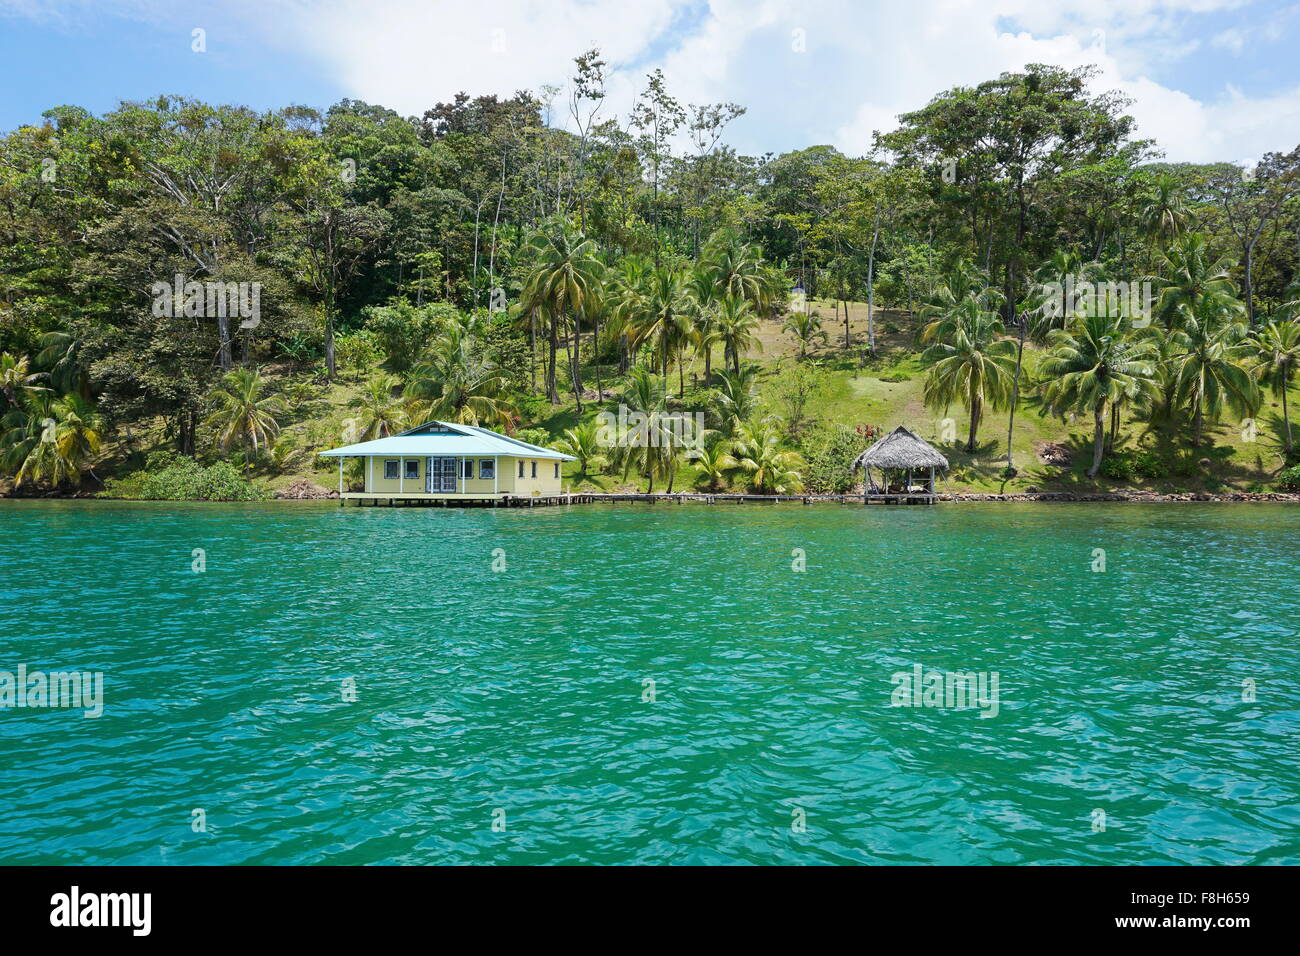 Seegrundstück mit tropischer Vegetation und Haus mit Hütte über dem Wasser, betrachtet aus dem Meer, Karibik, Panama Stockfoto